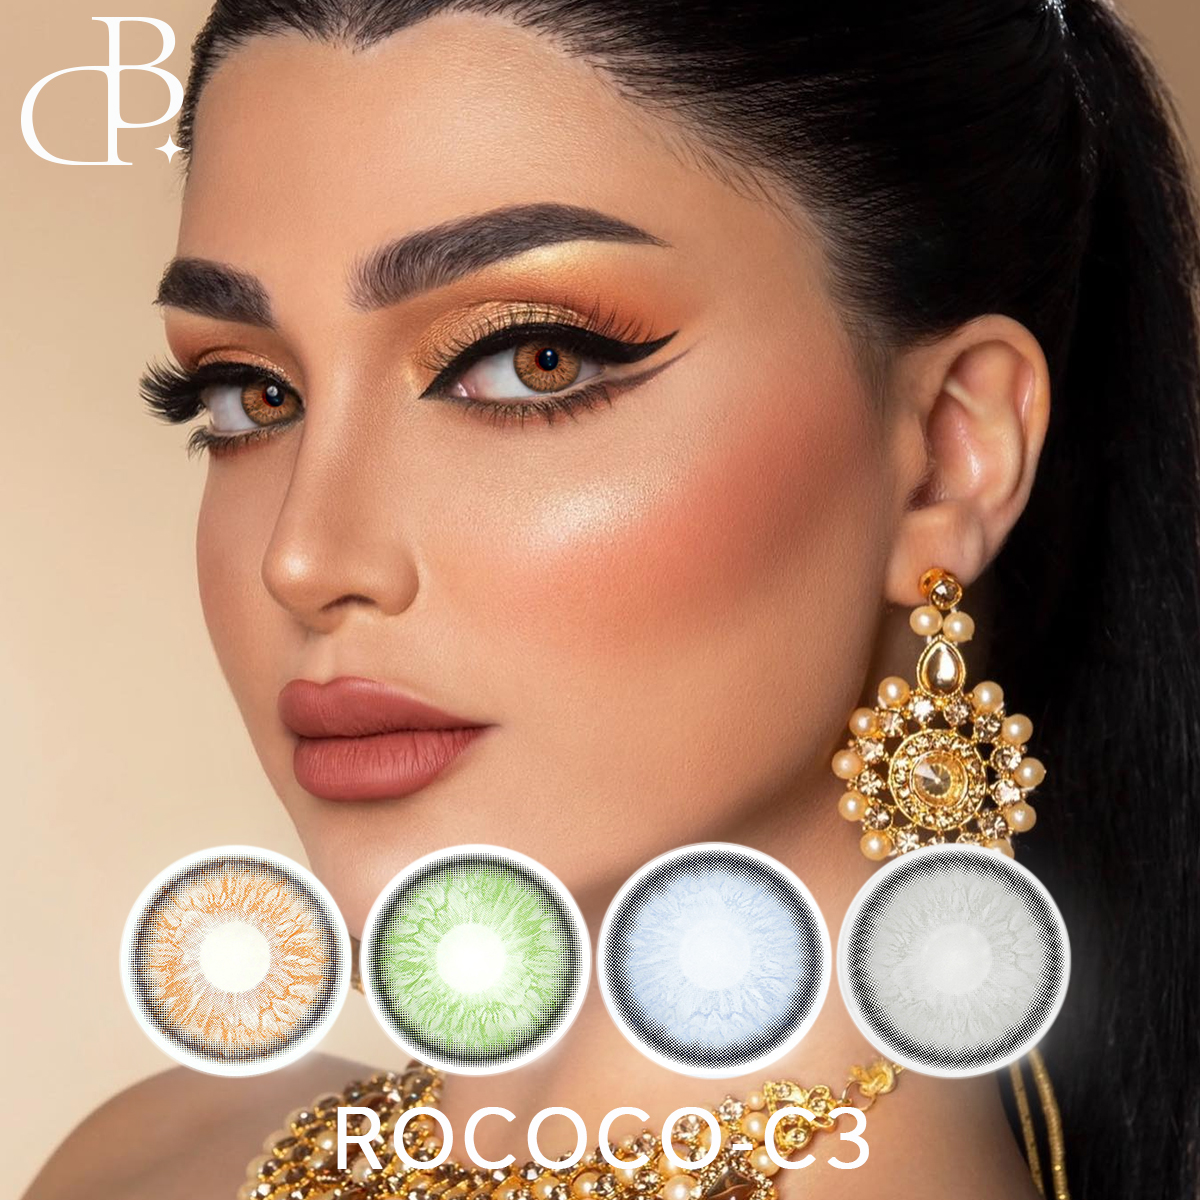 ROCOCO-3 novaspekta kosmetika pogranda kolora kontaktlenso malmultekostaj mildaj ĉiujaraj okulkoloraj kontaktlensoj